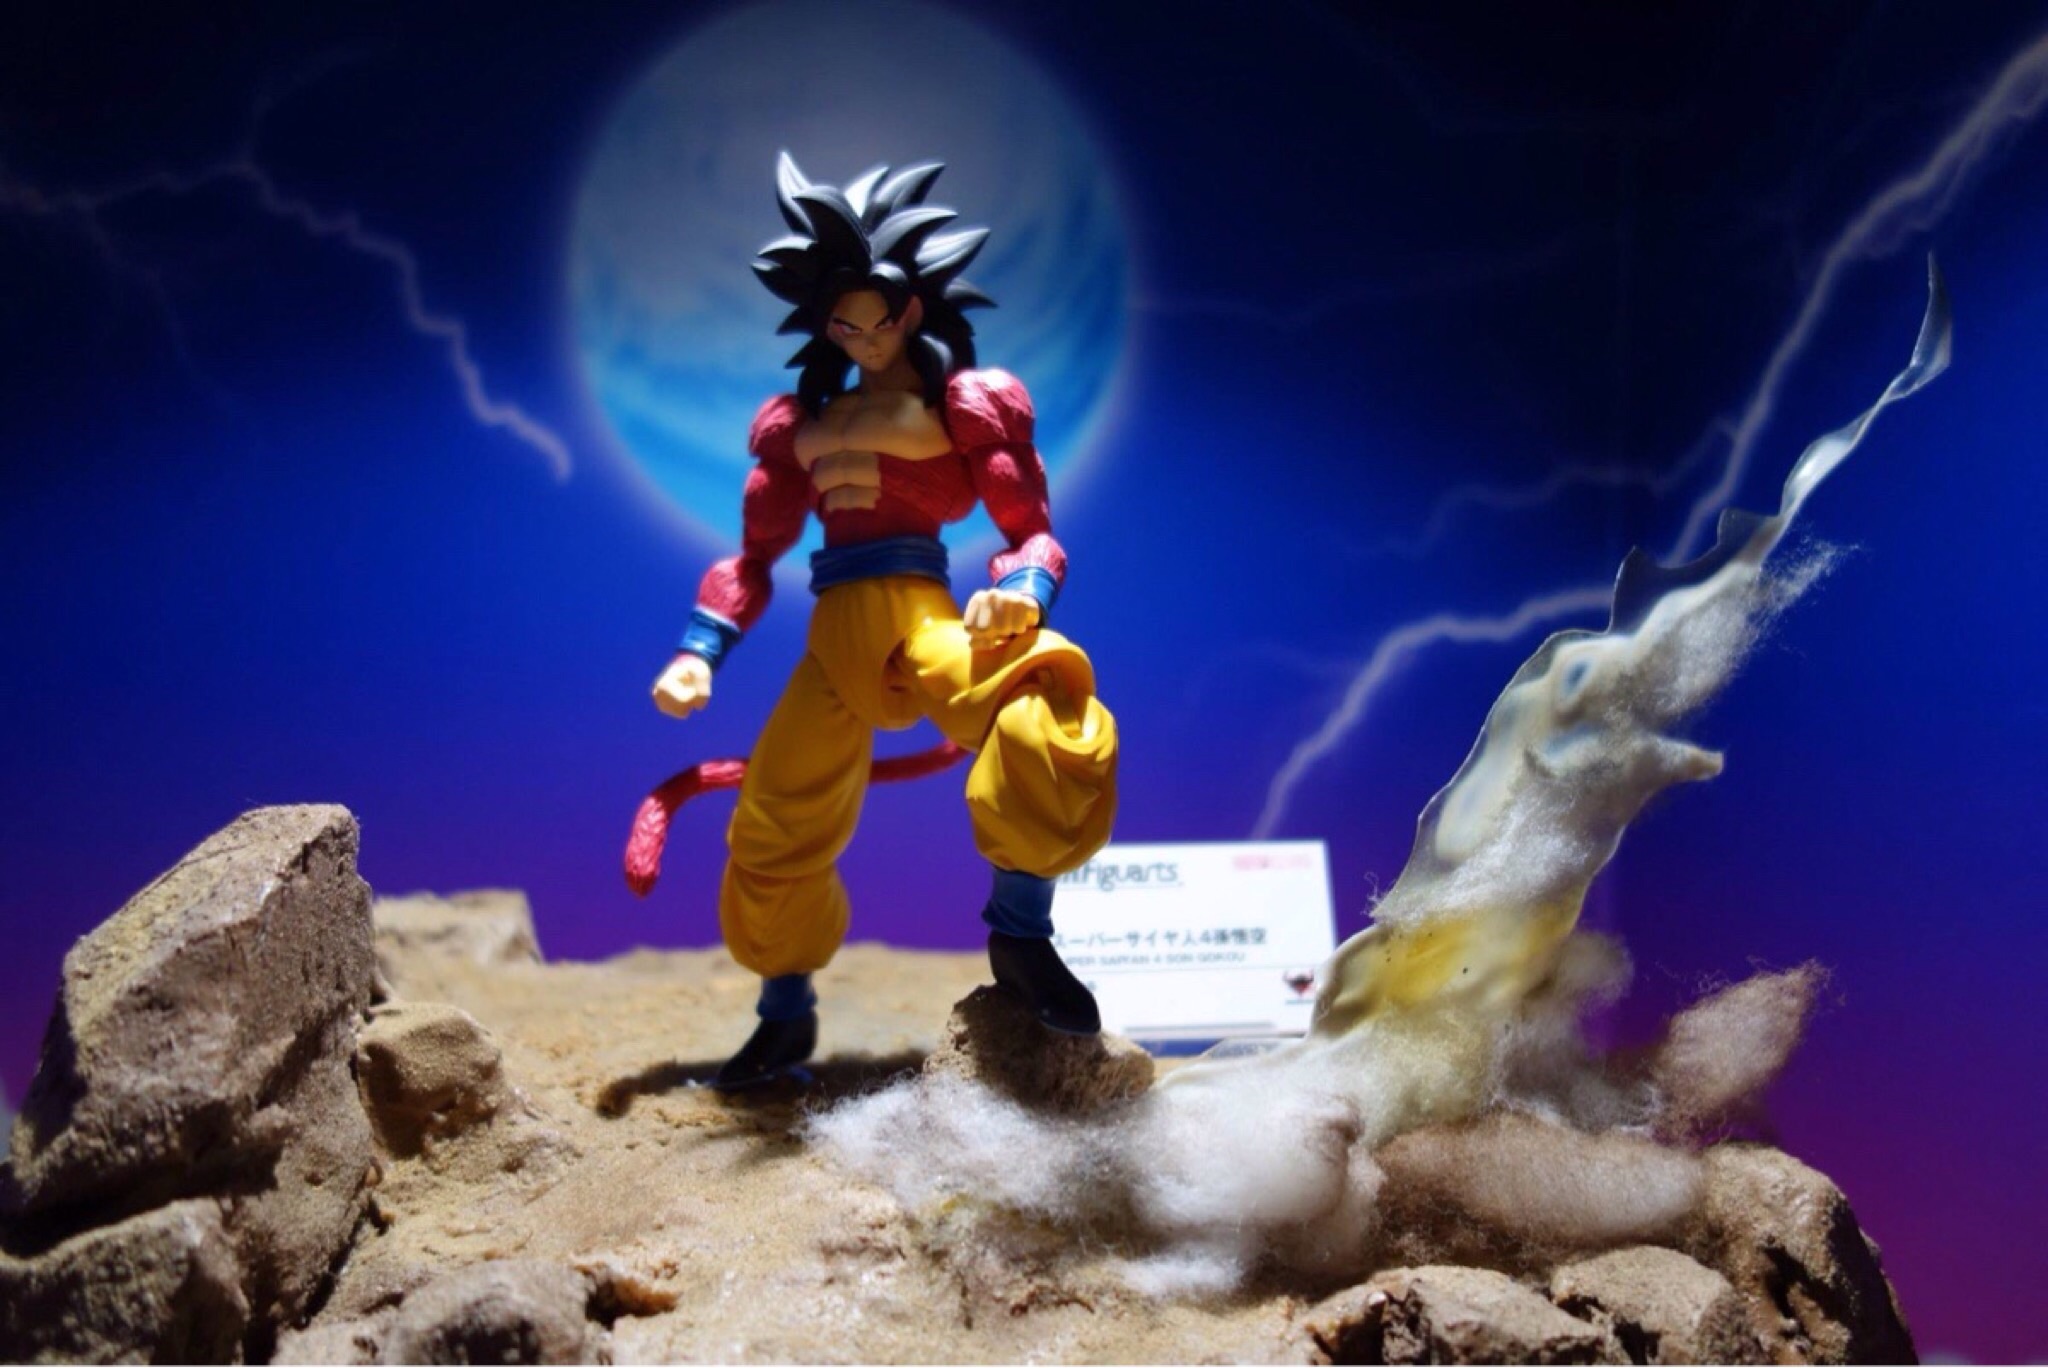 SH Figuarts Super Saiyan 4 Goku